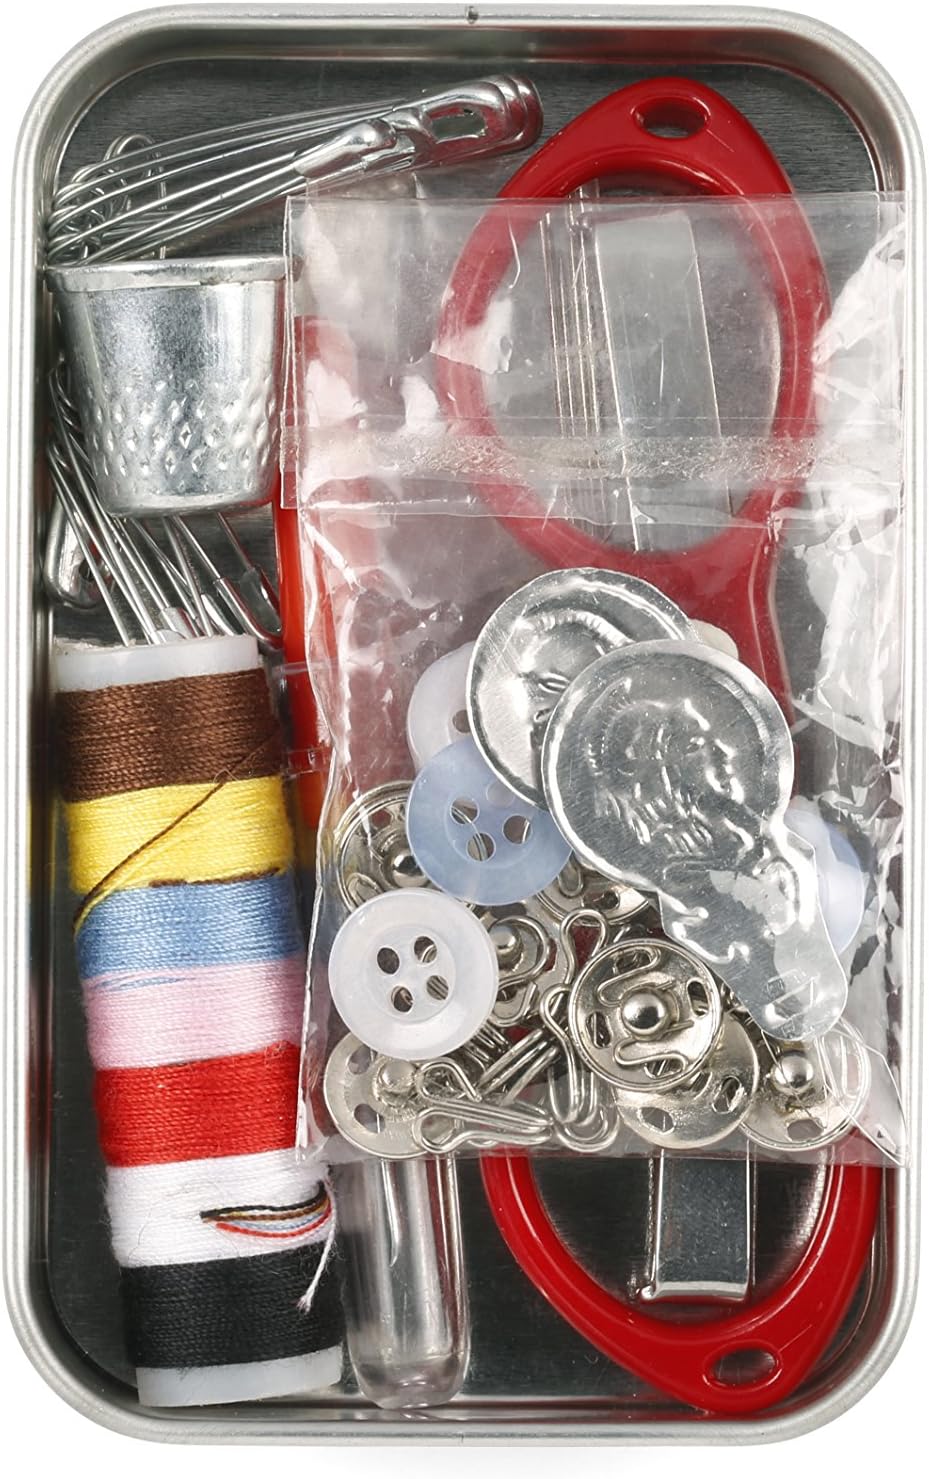 Kikkerland Sewing Kits